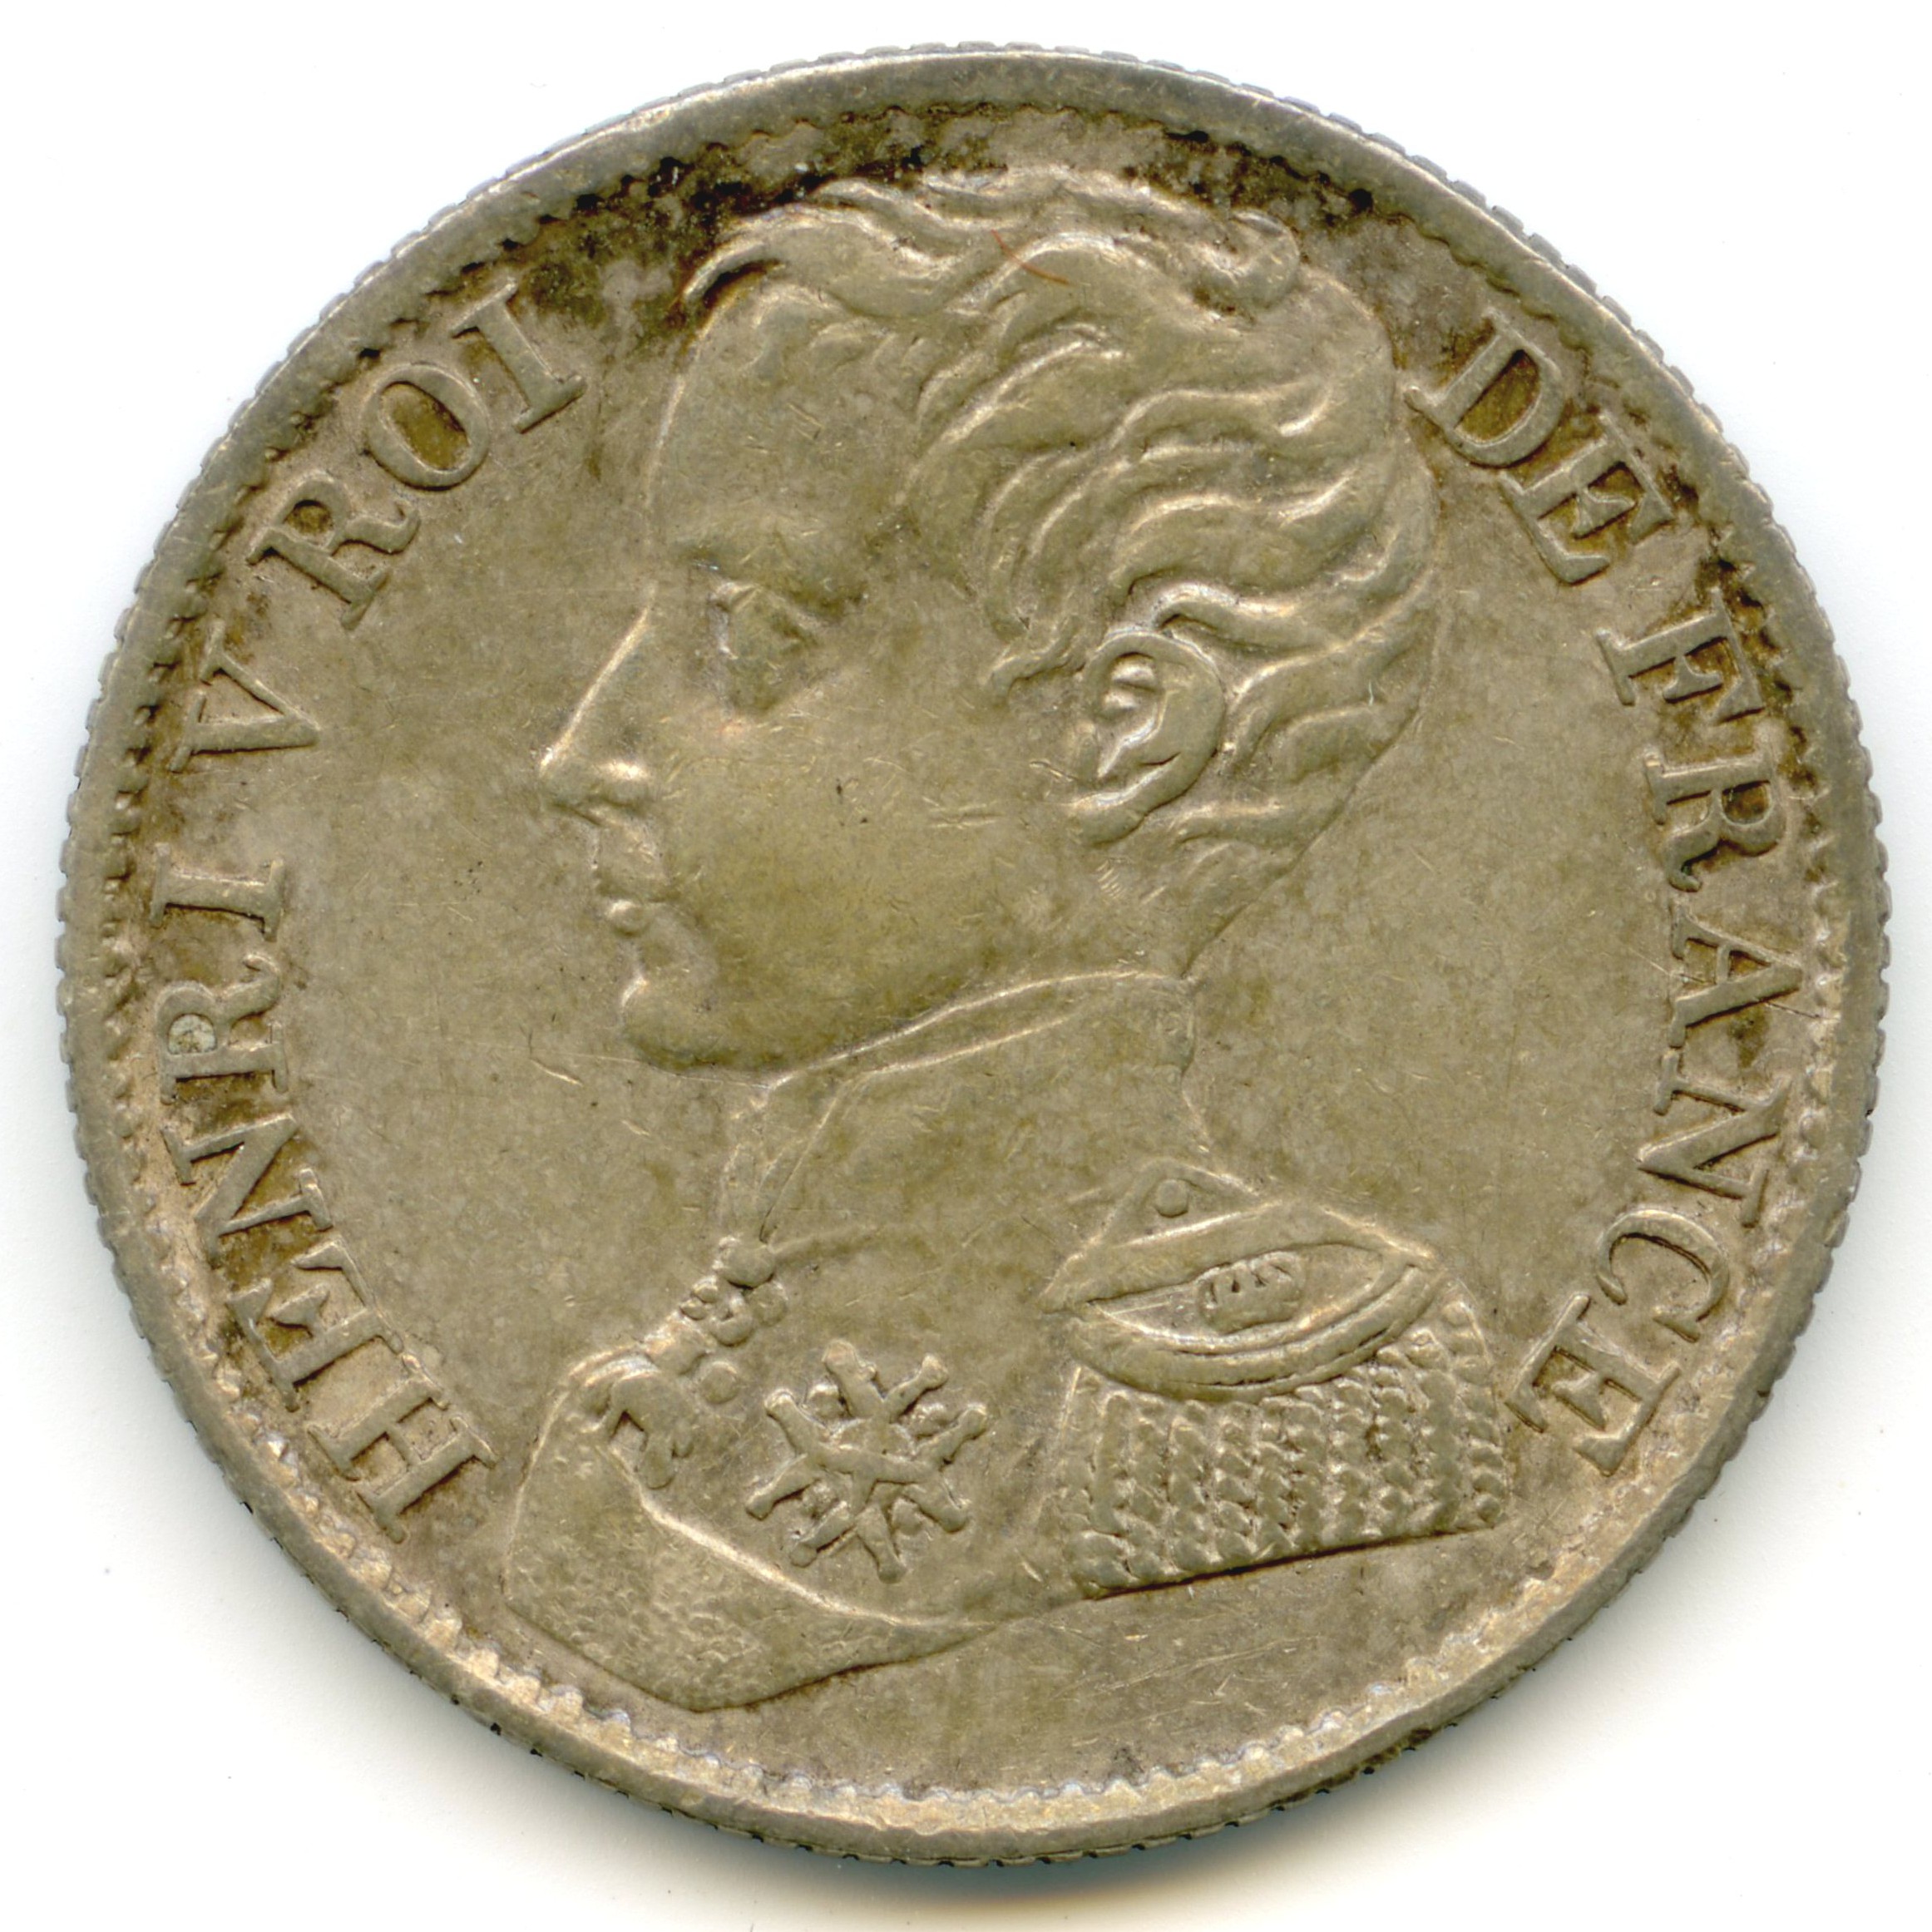 Henri V - 1 Franc - 1831 avers